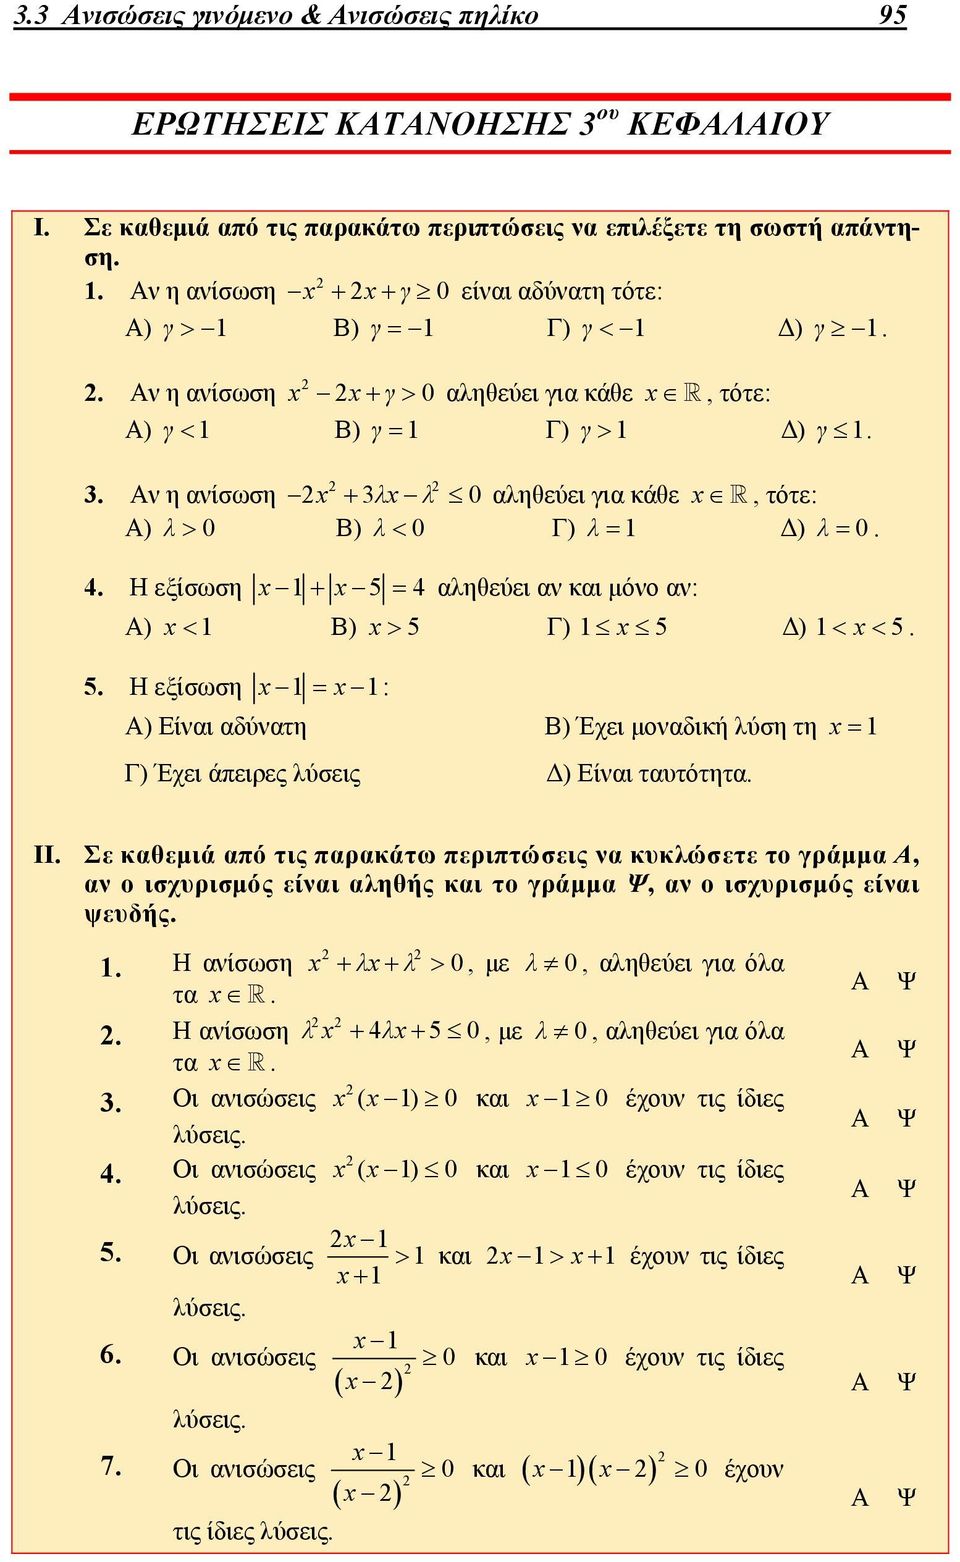 1 Β) 5 Γ) 1 5 Δ) 1 5 5 Η εξίσωση 1 1: ) Είναι αδύνατη Β) Έχει μοναδική λύση τη 1 Γ) Έχει άπειρες λύσεις Δ) Είναι ταυτότητα II Σε καθεμιά από τις παρακάτω περιπτώσεις να κυκλώσετε το γράμμα, αν ο